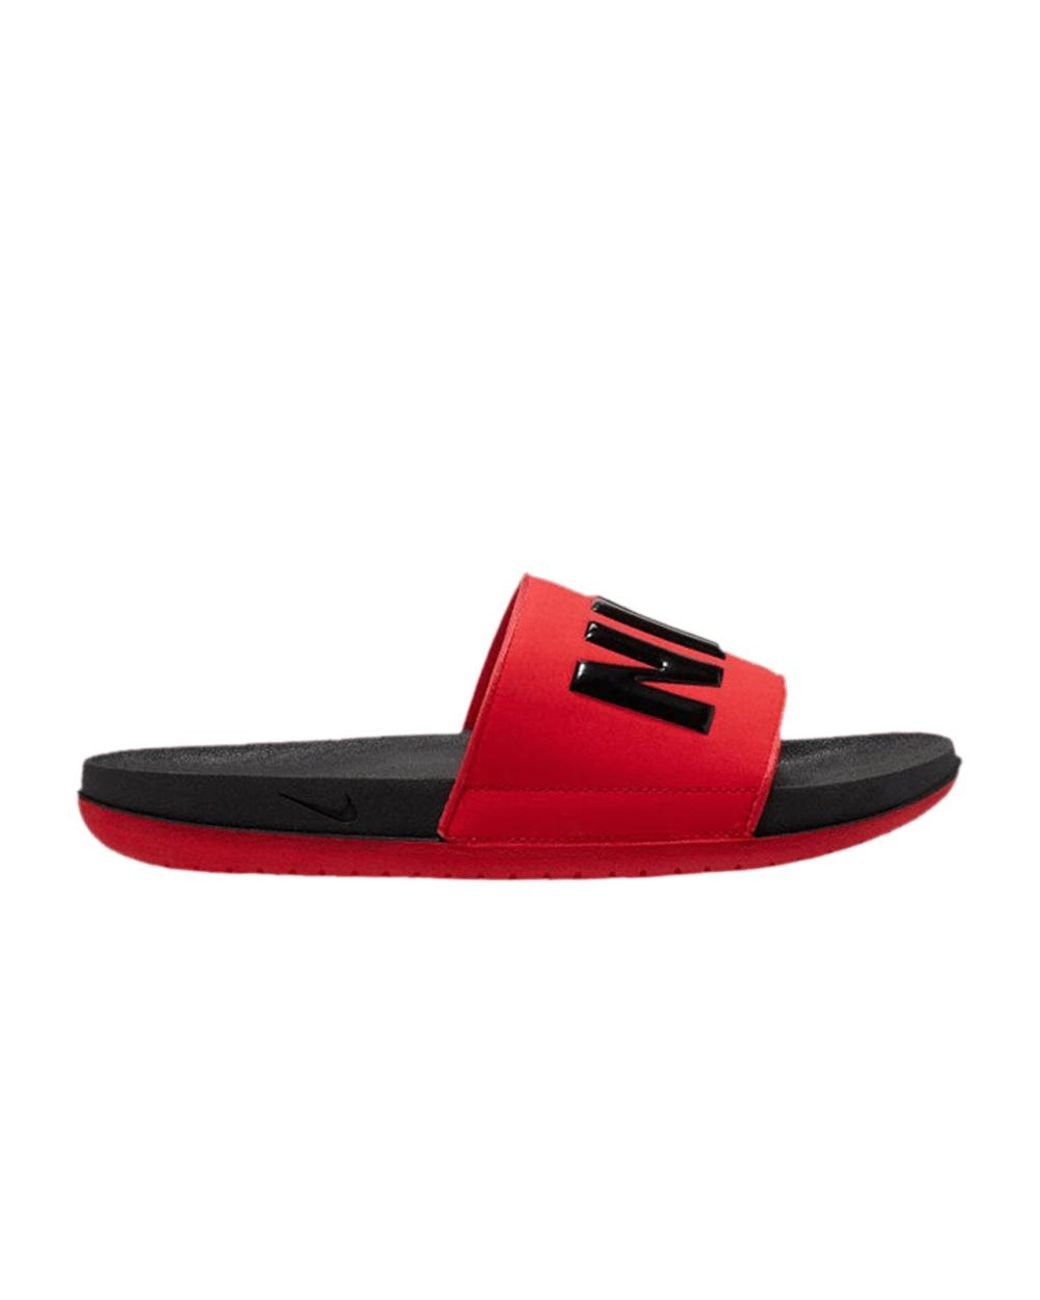 Nike Offcourt Slide 'black University Red' for Men - Lyst